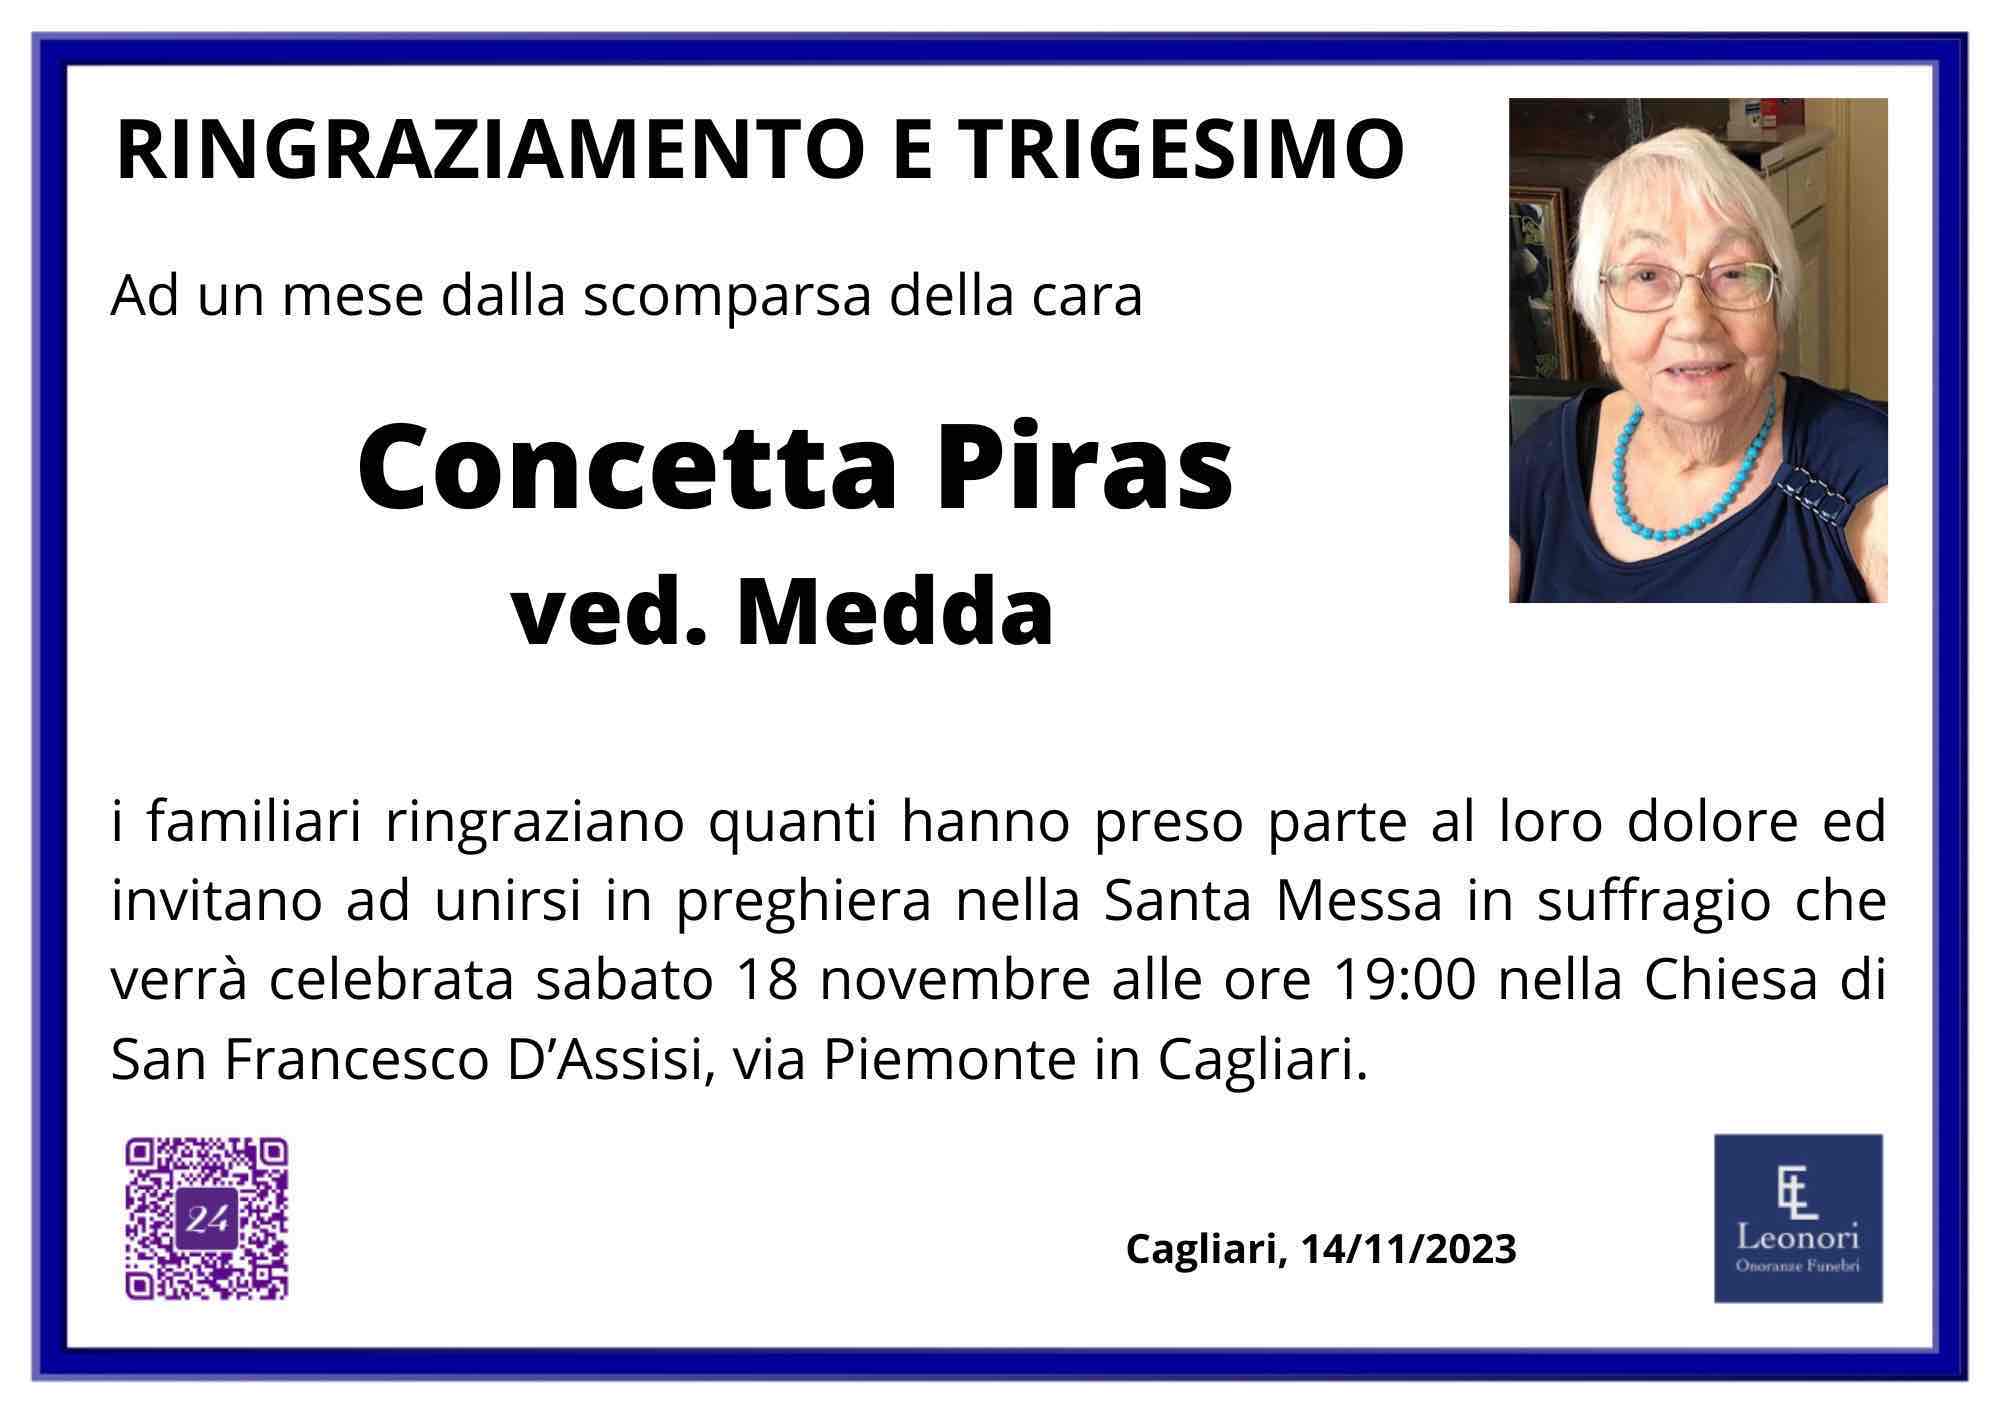 Concetta Piras